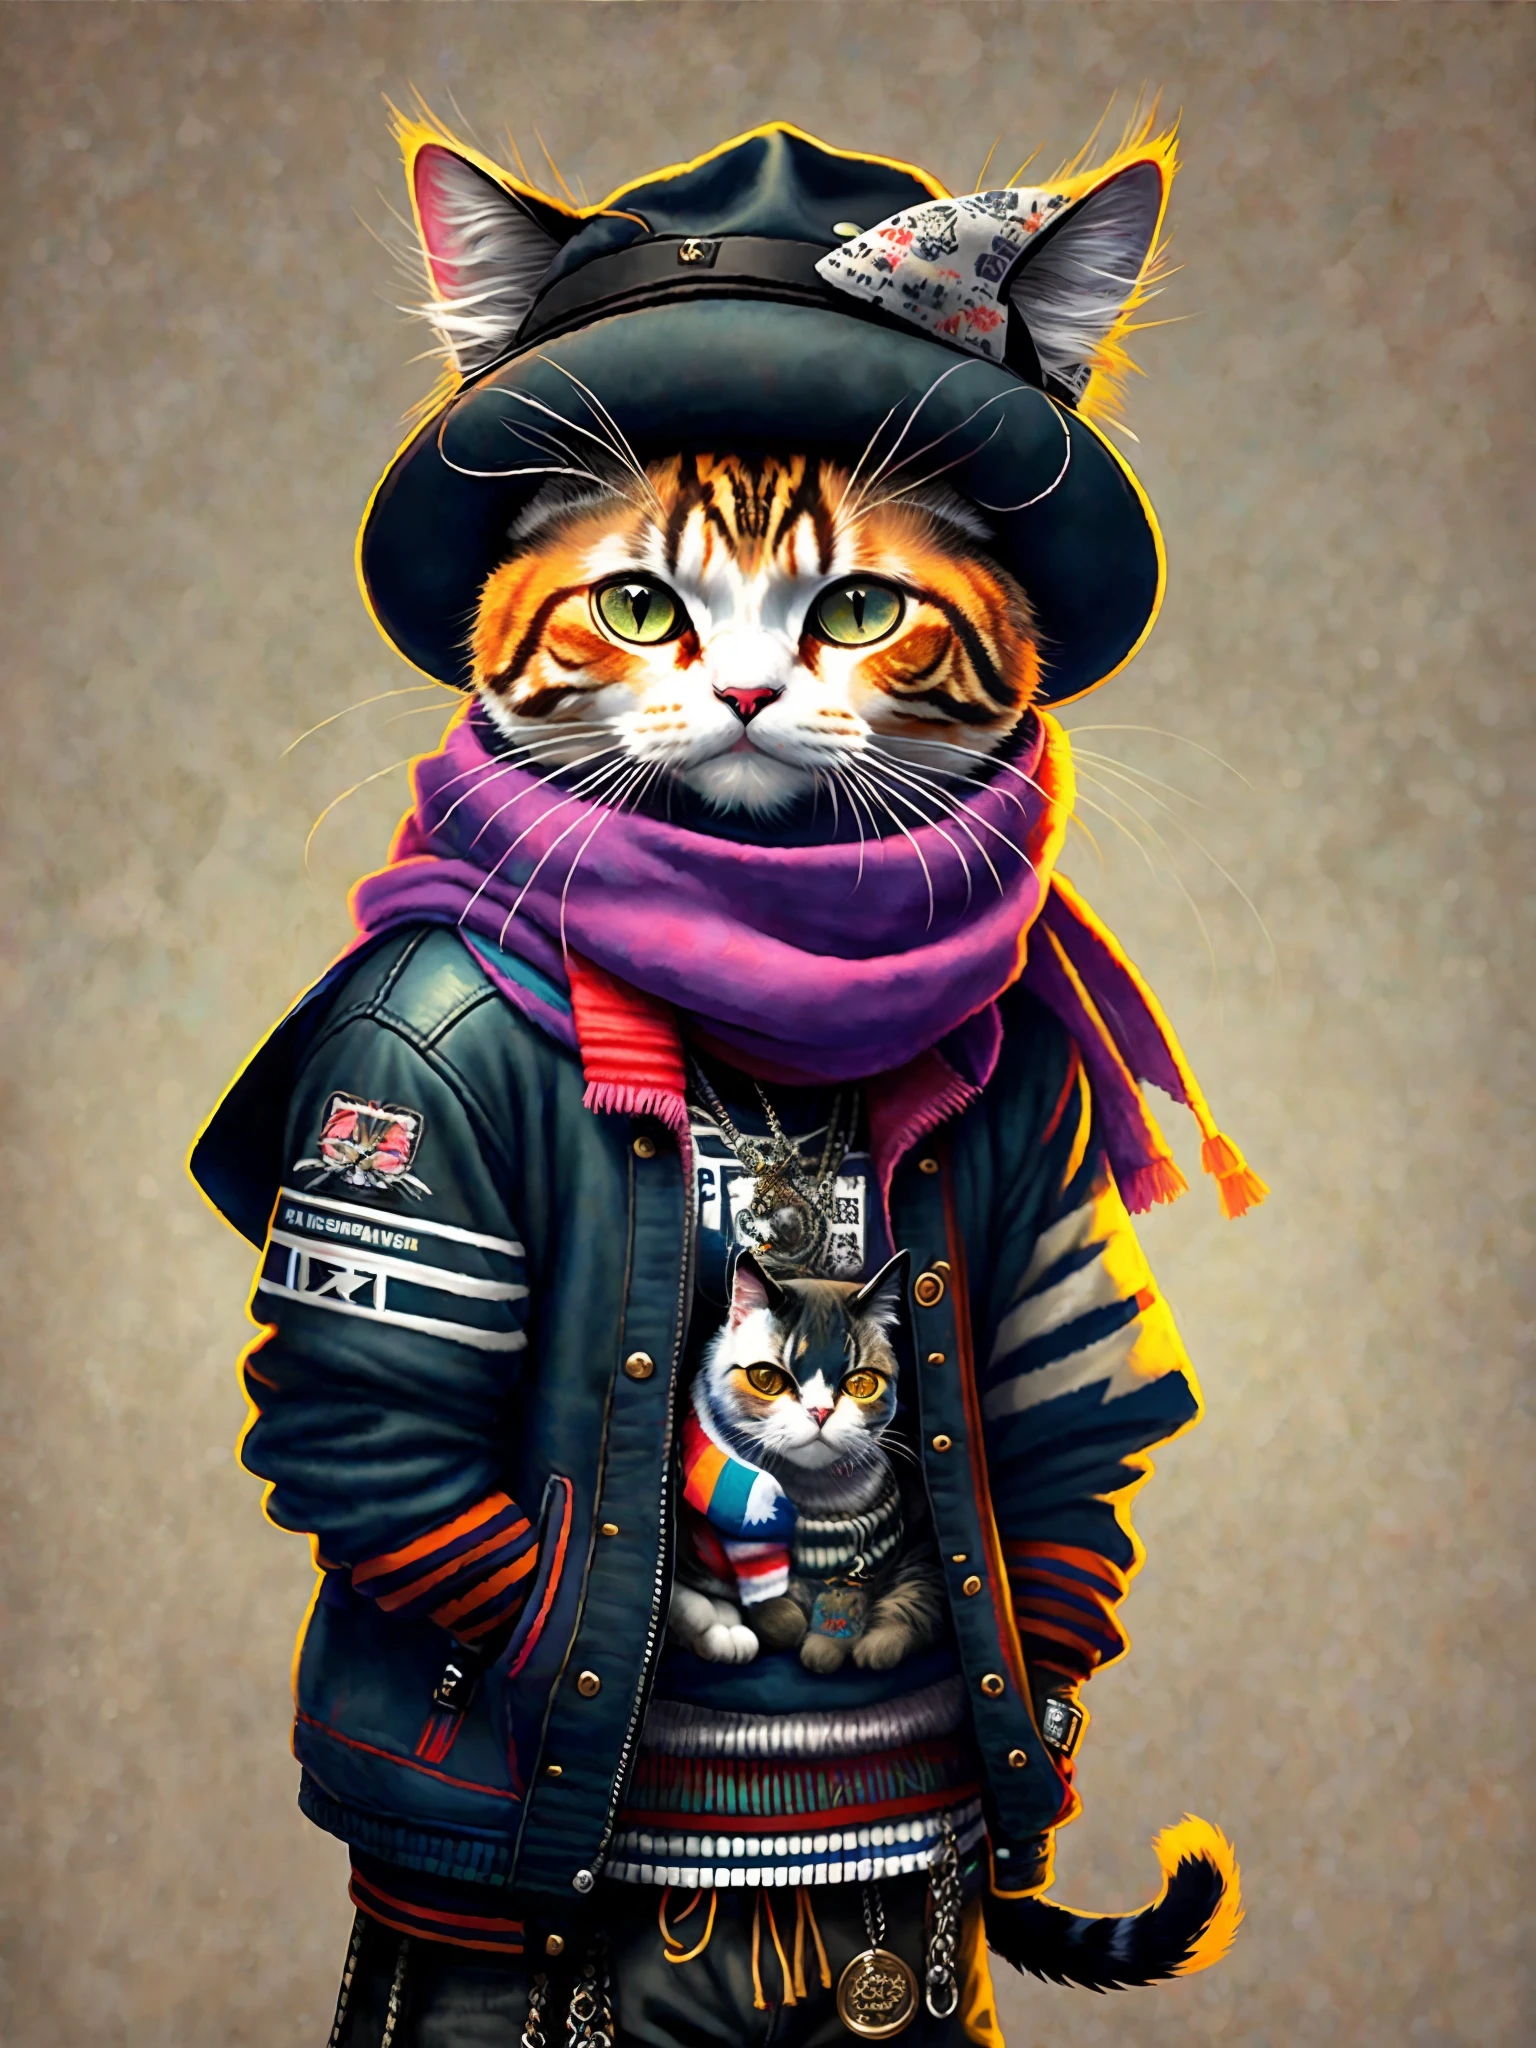 戴帽子圍巾的貓畫, 藝術站流行趨勢, 穿著龐克衣服, 詳細的超現實渲染, 英國黑幫成員, 街头风, 威胁姿势, 貓的星球, 衣服與時尚, 都市武士, 喵, 西斯拉夫特徵, 8 1 5